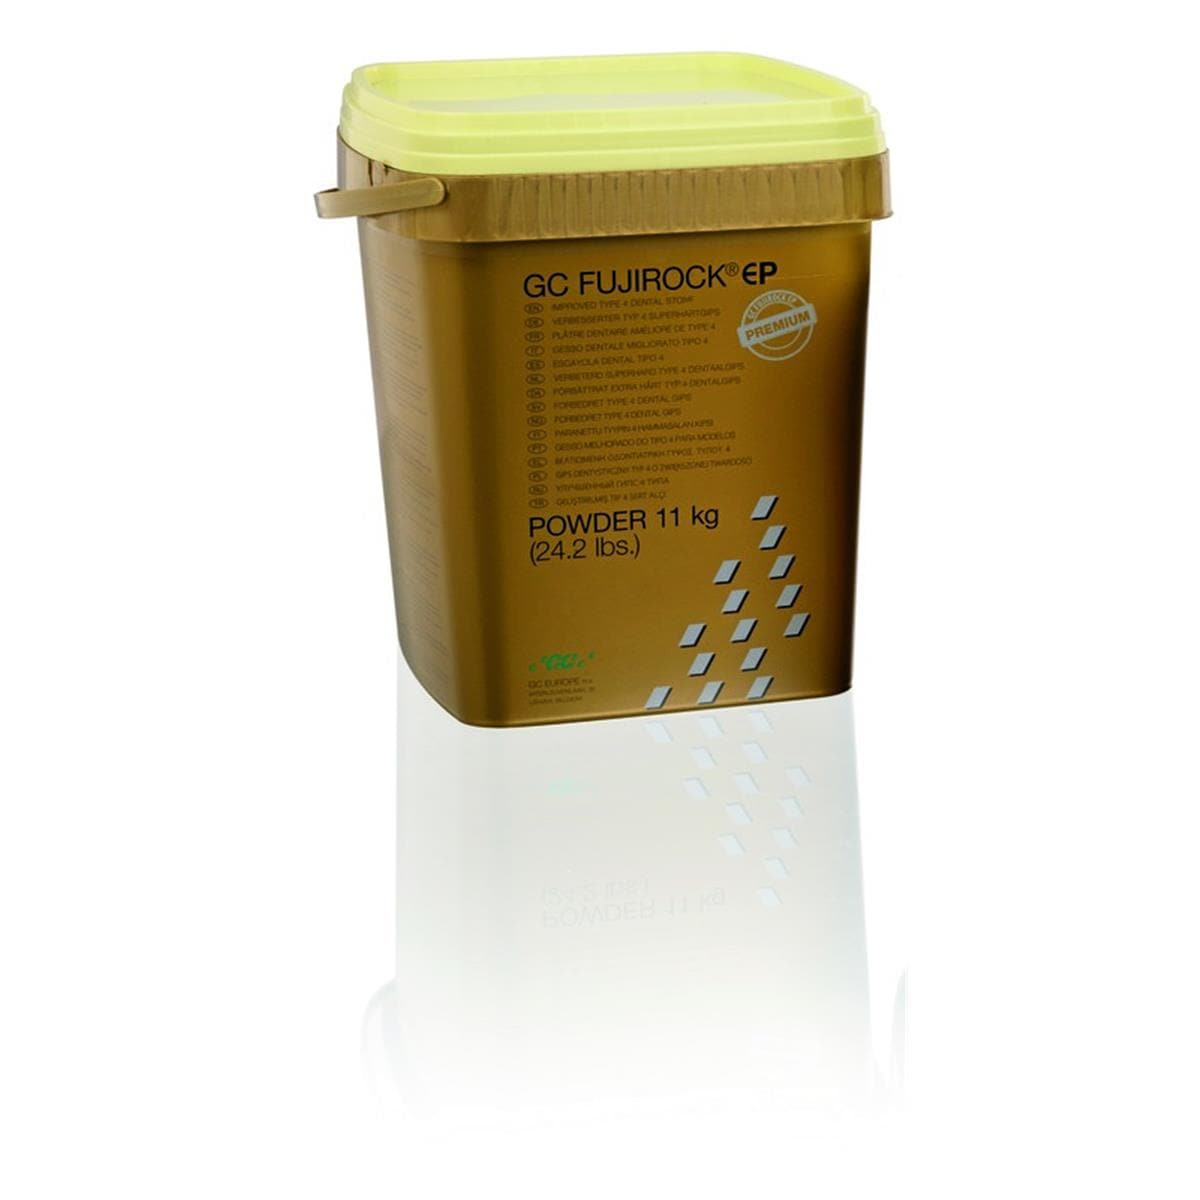 Pltre Fujirock EP Premium GC - Pastel yellow - Le seau de 11 kg